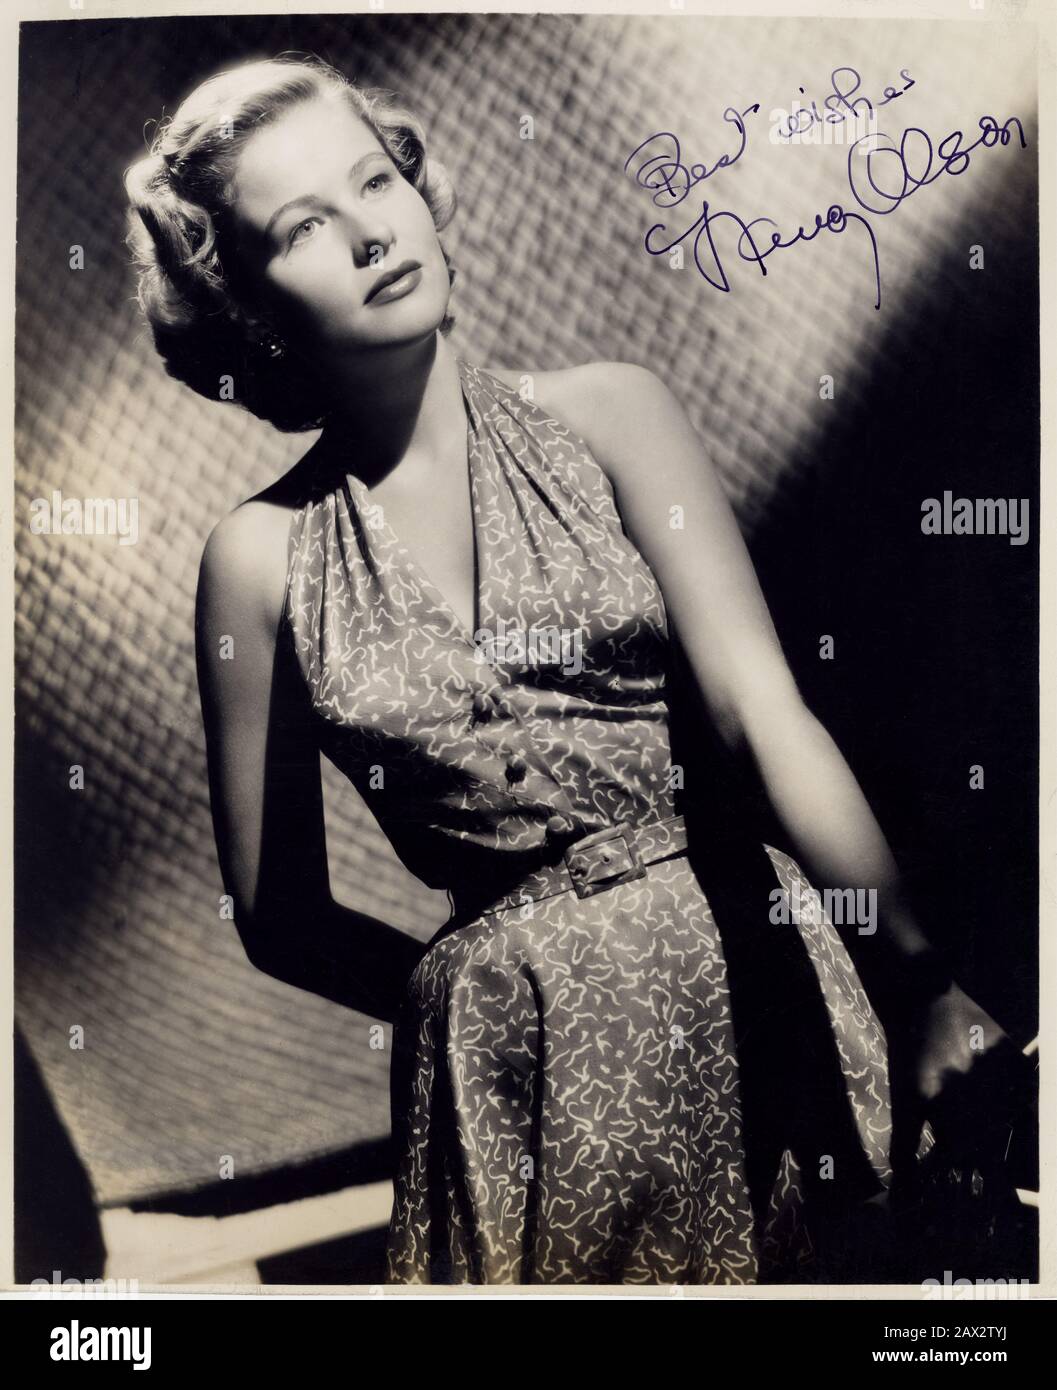 1951 ca , USA : l'attrice americana NANCY OLSON ( Milwaukee, 14 luglio 1928 ), pubblica ancora . Più celebre per il suo ruolo in SUNSET BOULEVARD ( 1950 - Viale del tramonto ) By Billy Wilder - CINEMA - film - ritratto - ratto - capelli biondi - capelli biondi - DIVA - DIVINA - bionda - MODA - moda - moda - ANNI CINQUANTA - 50 - AUTOGRAFO - AUTOGRAPH - firma - firma - - - - - --- Archivio GBB Foto Stock